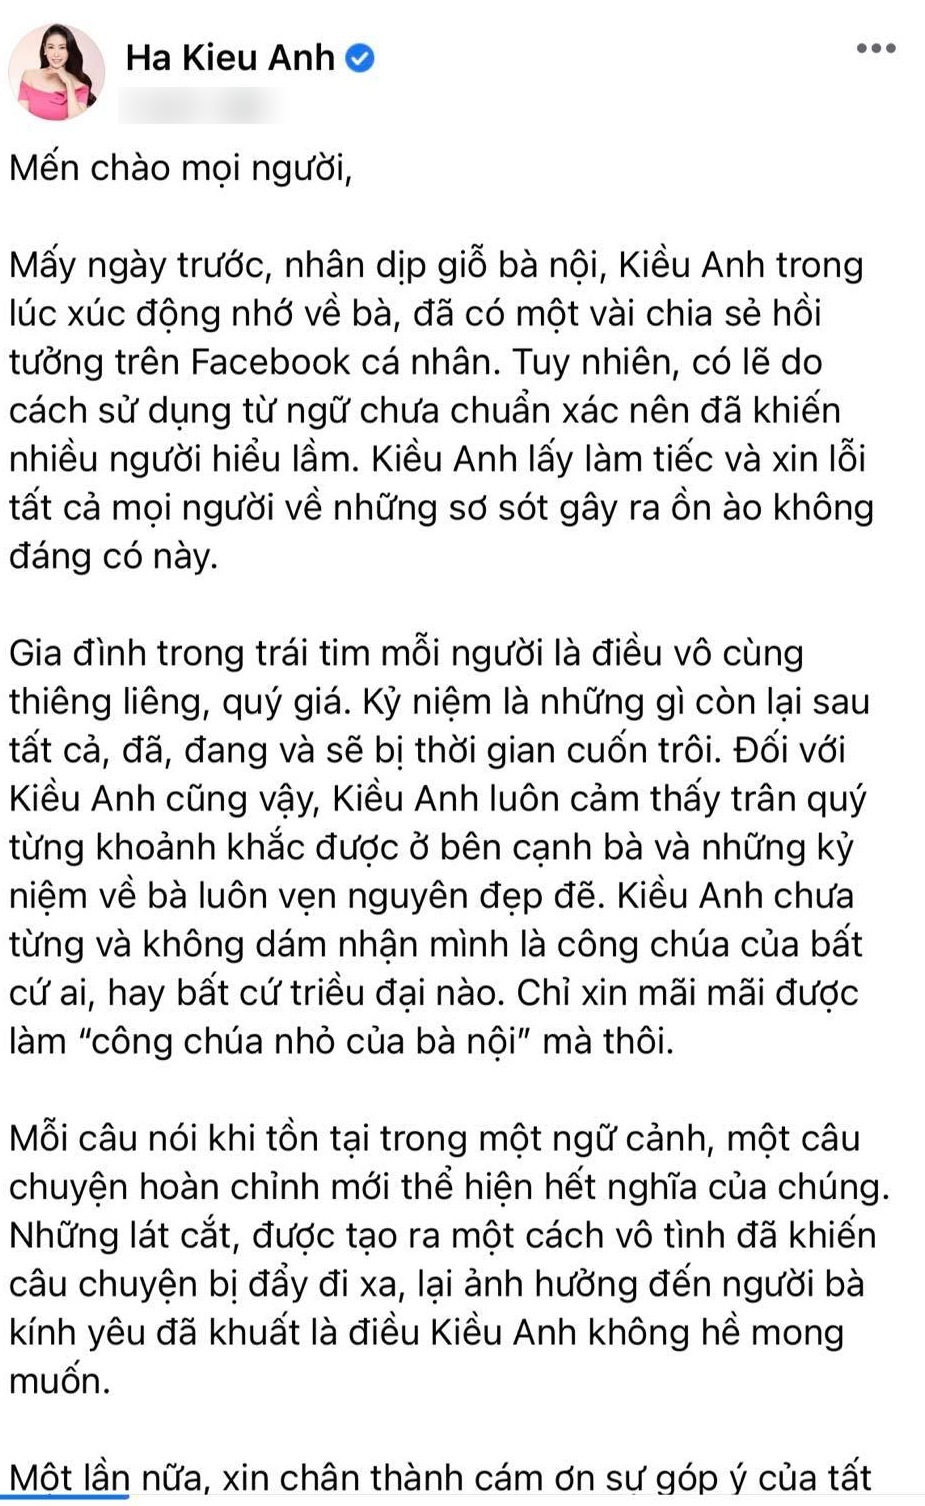 Hà Kiều Anh nhận sai và xin lỗi, hậu duệ nhà Nguyễn liền viết tâm thư nhắn nhủ - Ảnh 5